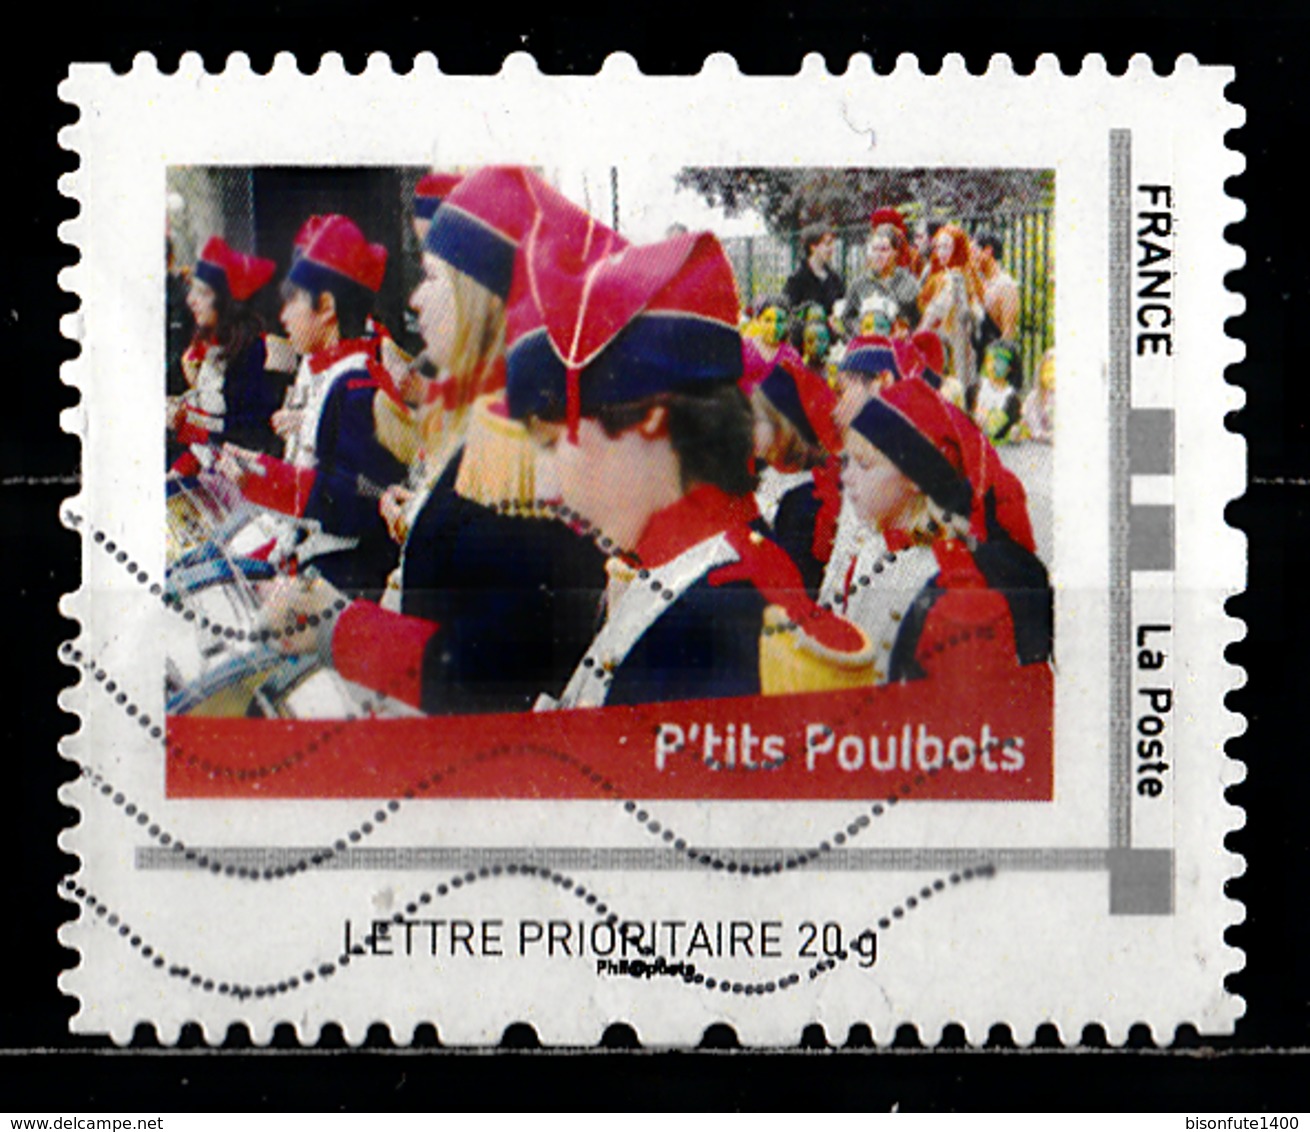 Collector J'aime Le 18ème 2013 : P'tits Poulbots. - Collectors